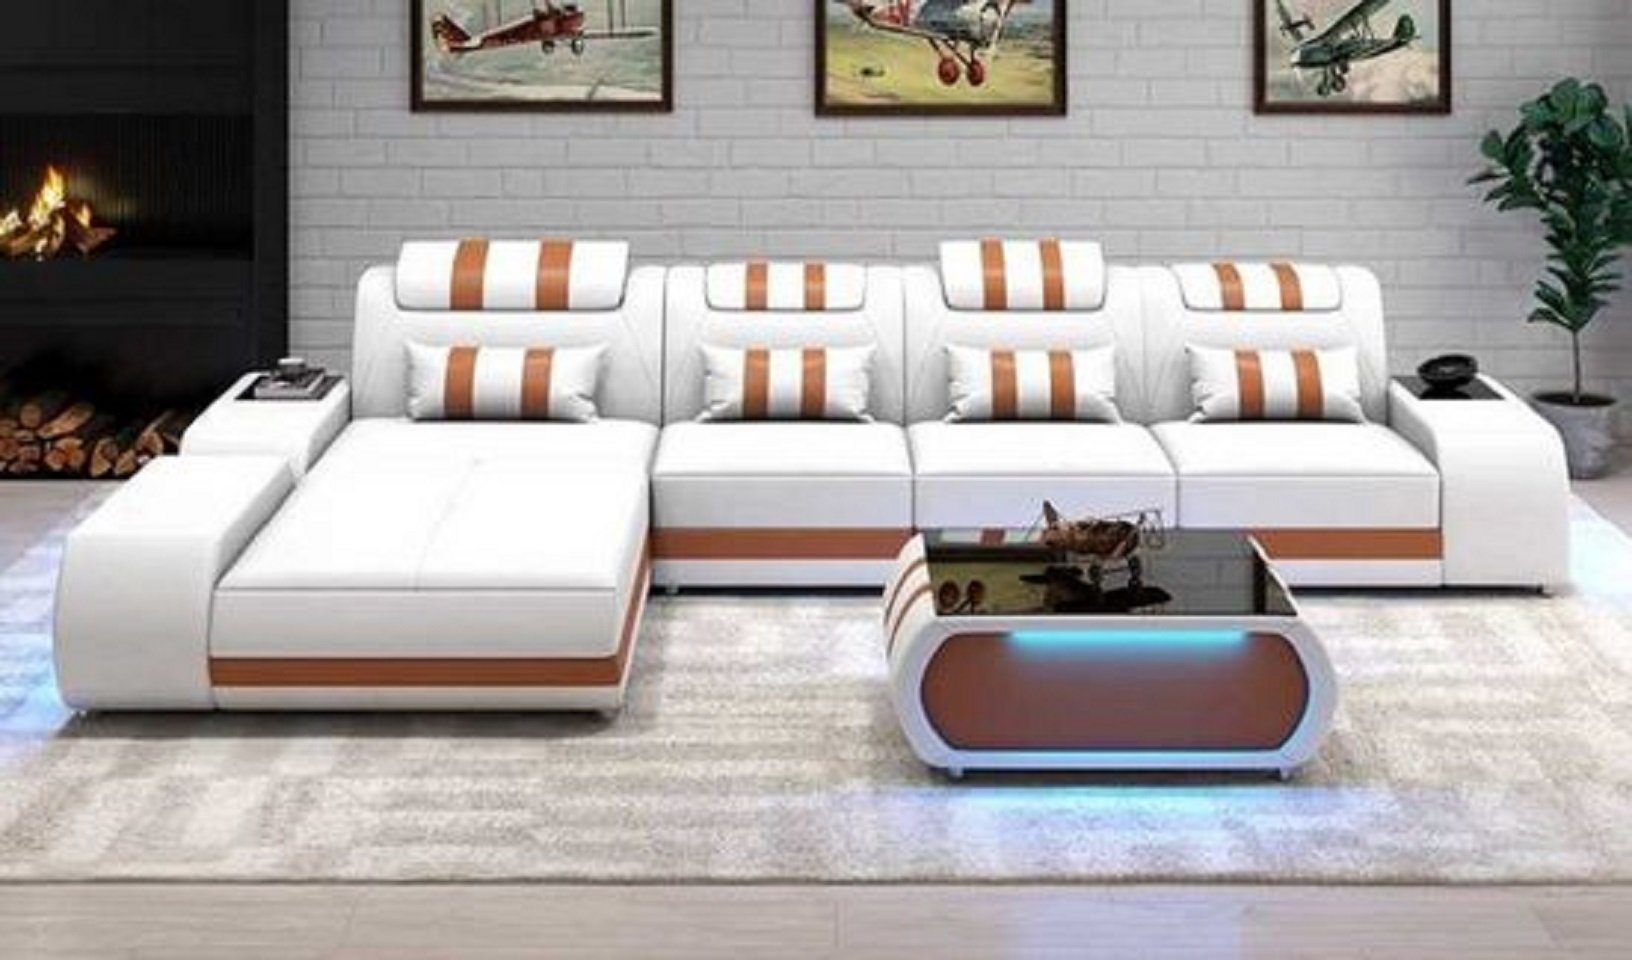 JVmoebel Ecksofa Eckgarnitur Ecksofa L Form Ledersofa Sofa Couch Luxus Design Couchen, 3 Teile, Made in Europe Weiß/Braun | Ecksofas